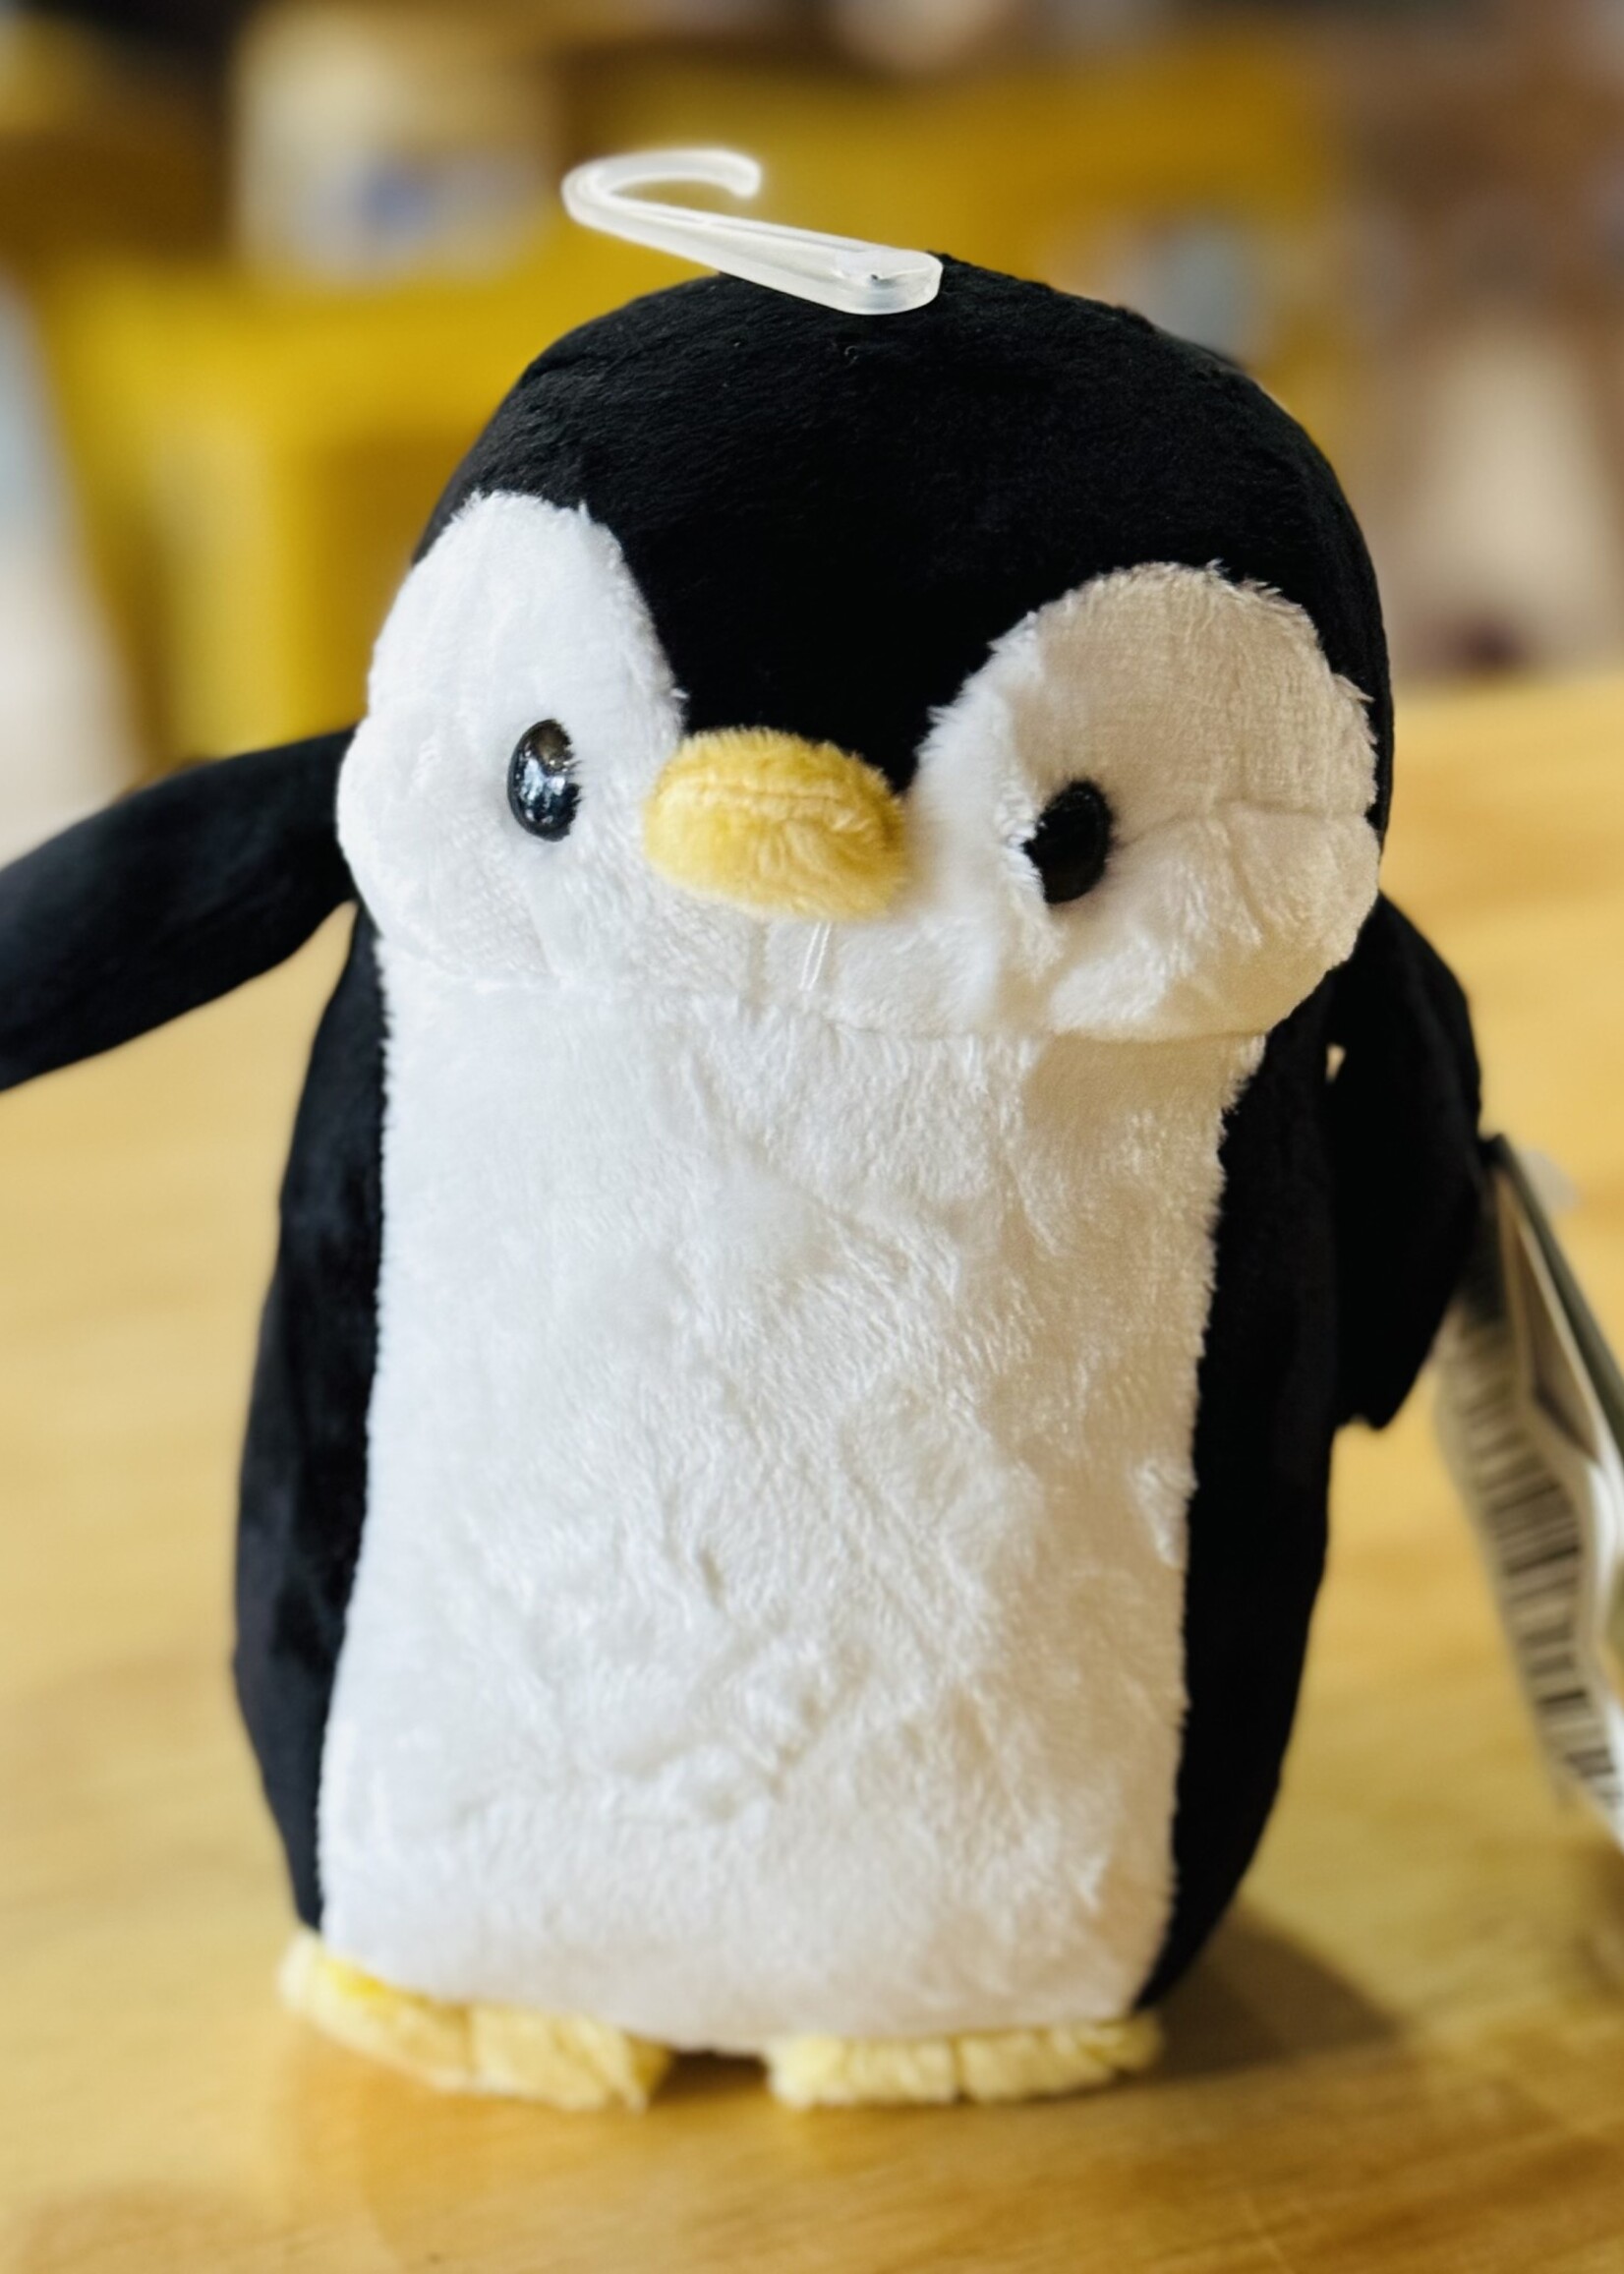 Bellzi Mini Pengi the Penguin